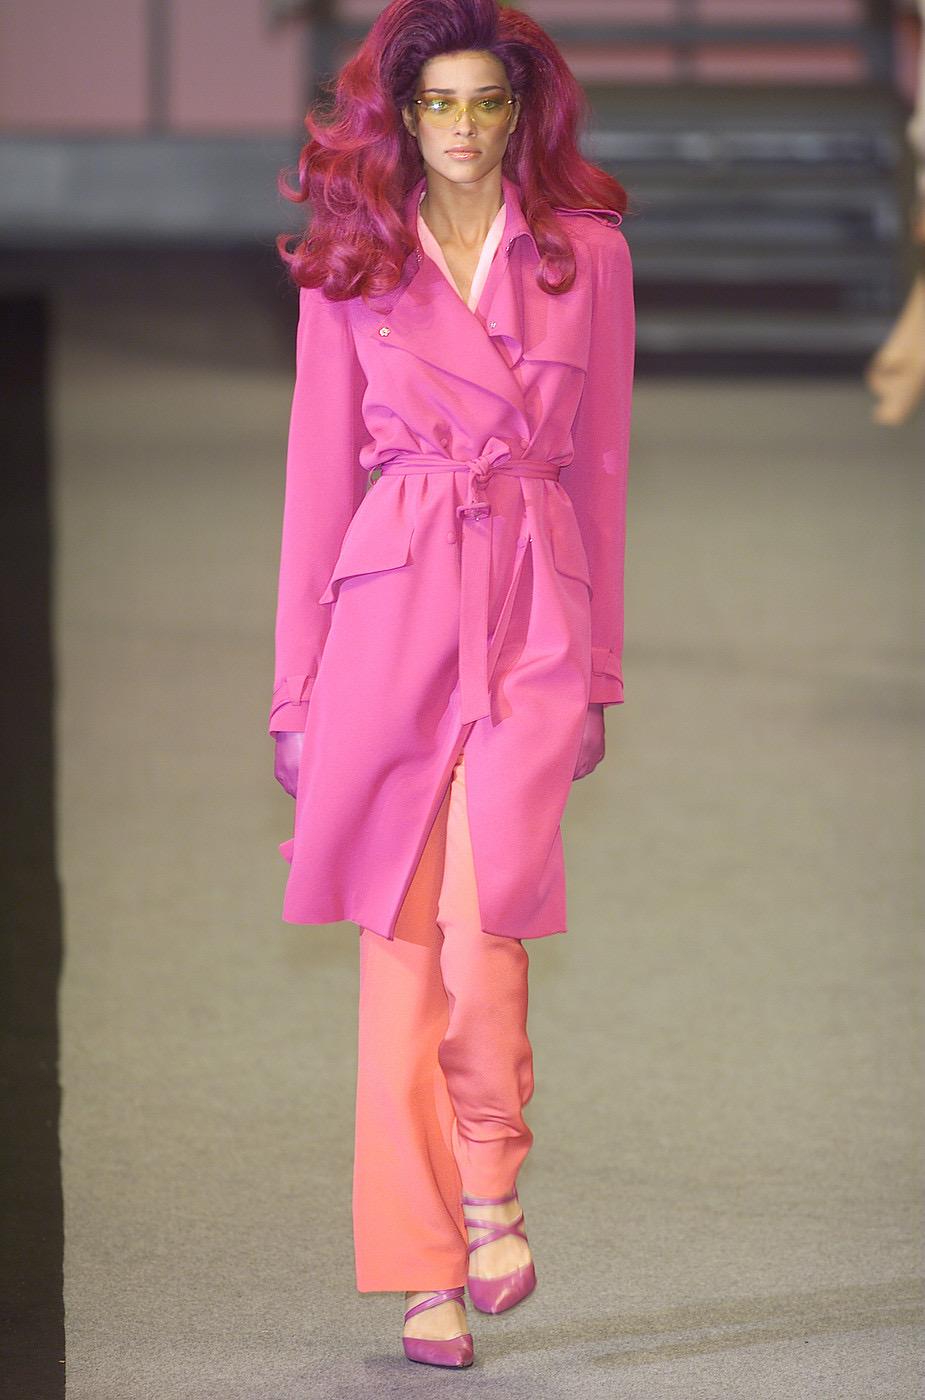 Wir präsentieren einen pinkfarbenen Thierry Mugler Couture Trenchcoat aus der letzten Kollektion von Manfried Thierry Mugler vor seinem Rücktritt, der Herbst/Winter 2001 Kollektion 